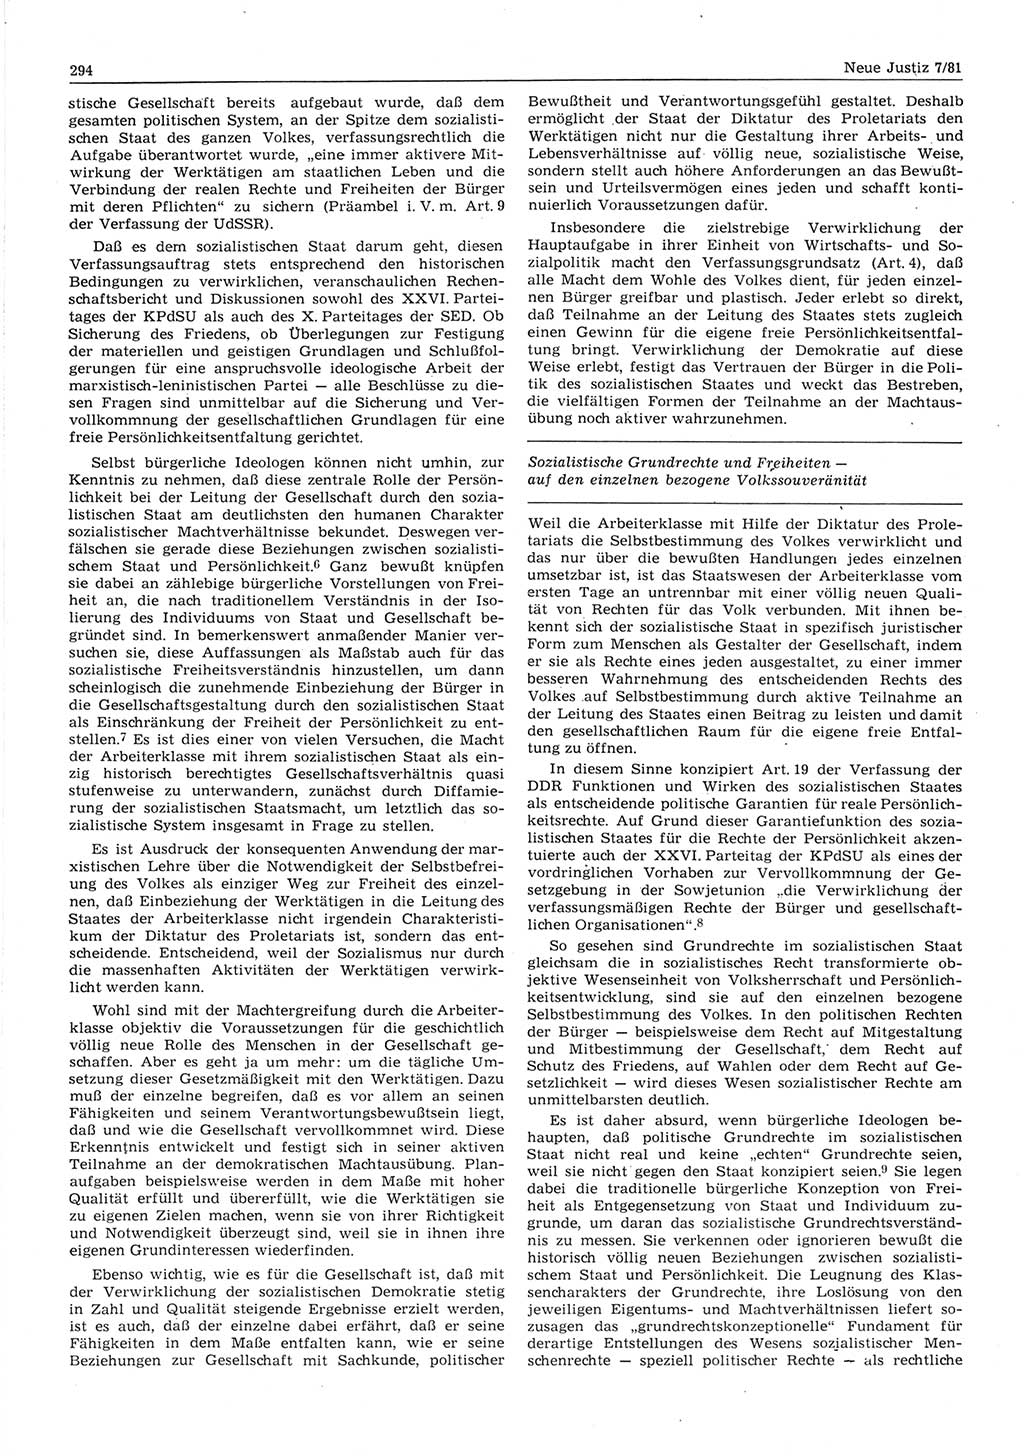 Neue Justiz (NJ), Zeitschrift für sozialistisches Recht und Gesetzlichkeit [Deutsche Demokratische Republik (DDR)], 35. Jahrgang 1981, Seite 294 (NJ DDR 1981, S. 294)